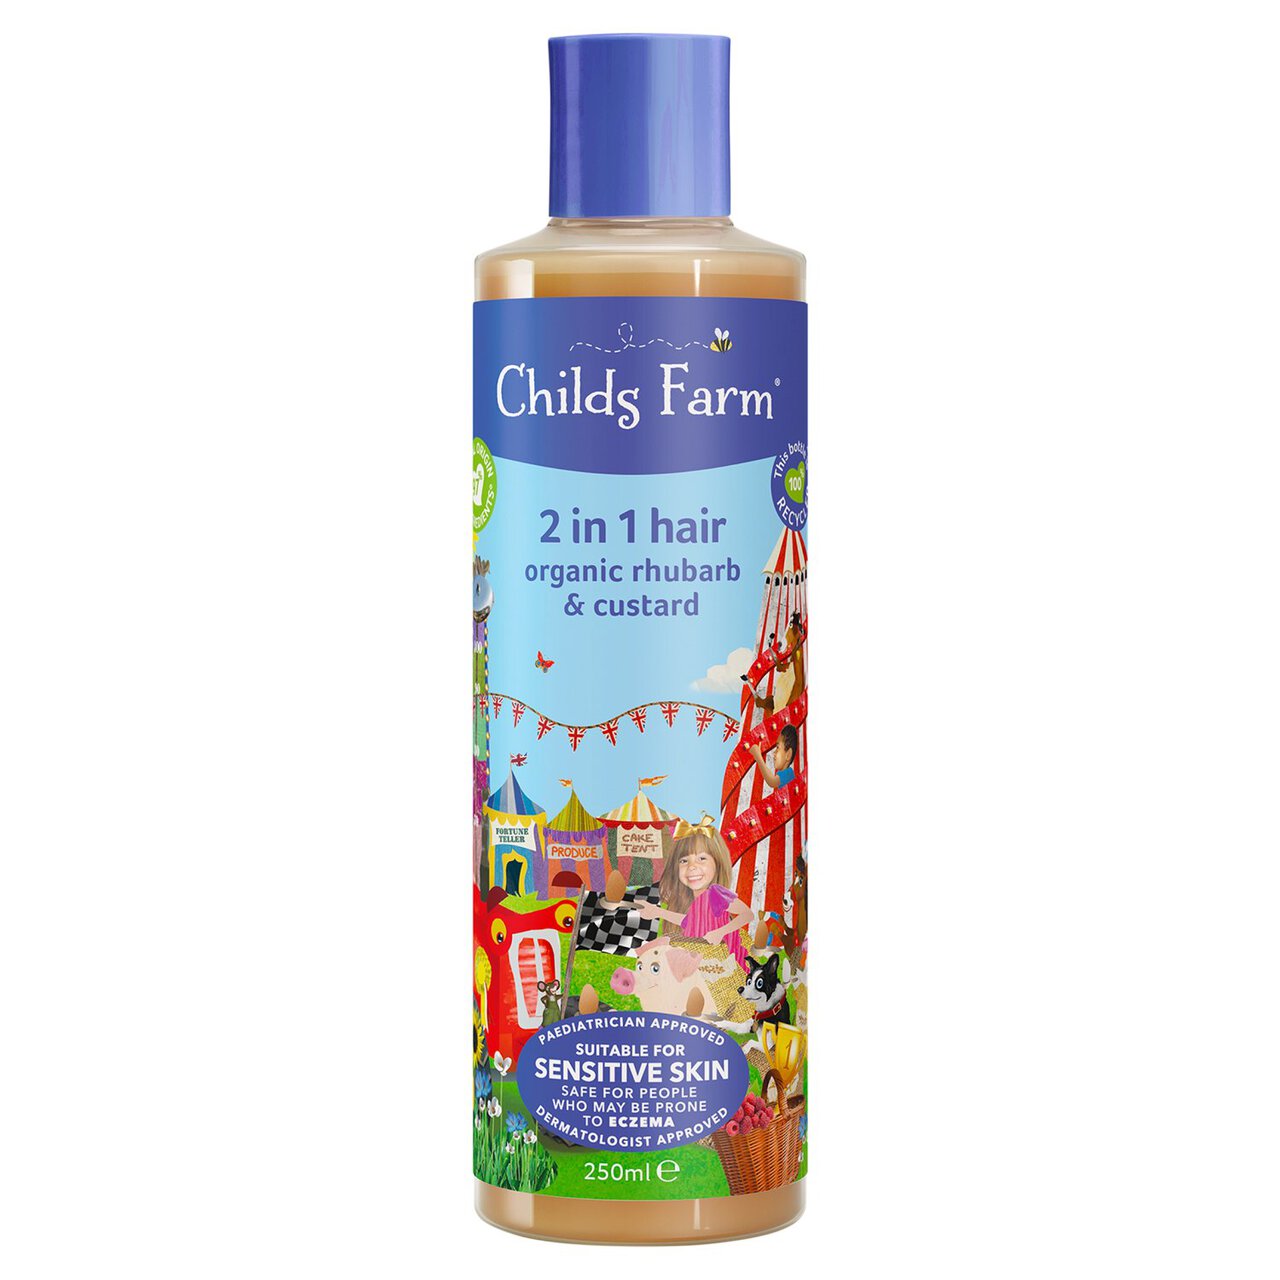 Childs Farm Kids Rhubarb & Custard 2 in 1 Shampoo & Conditioner 250ml